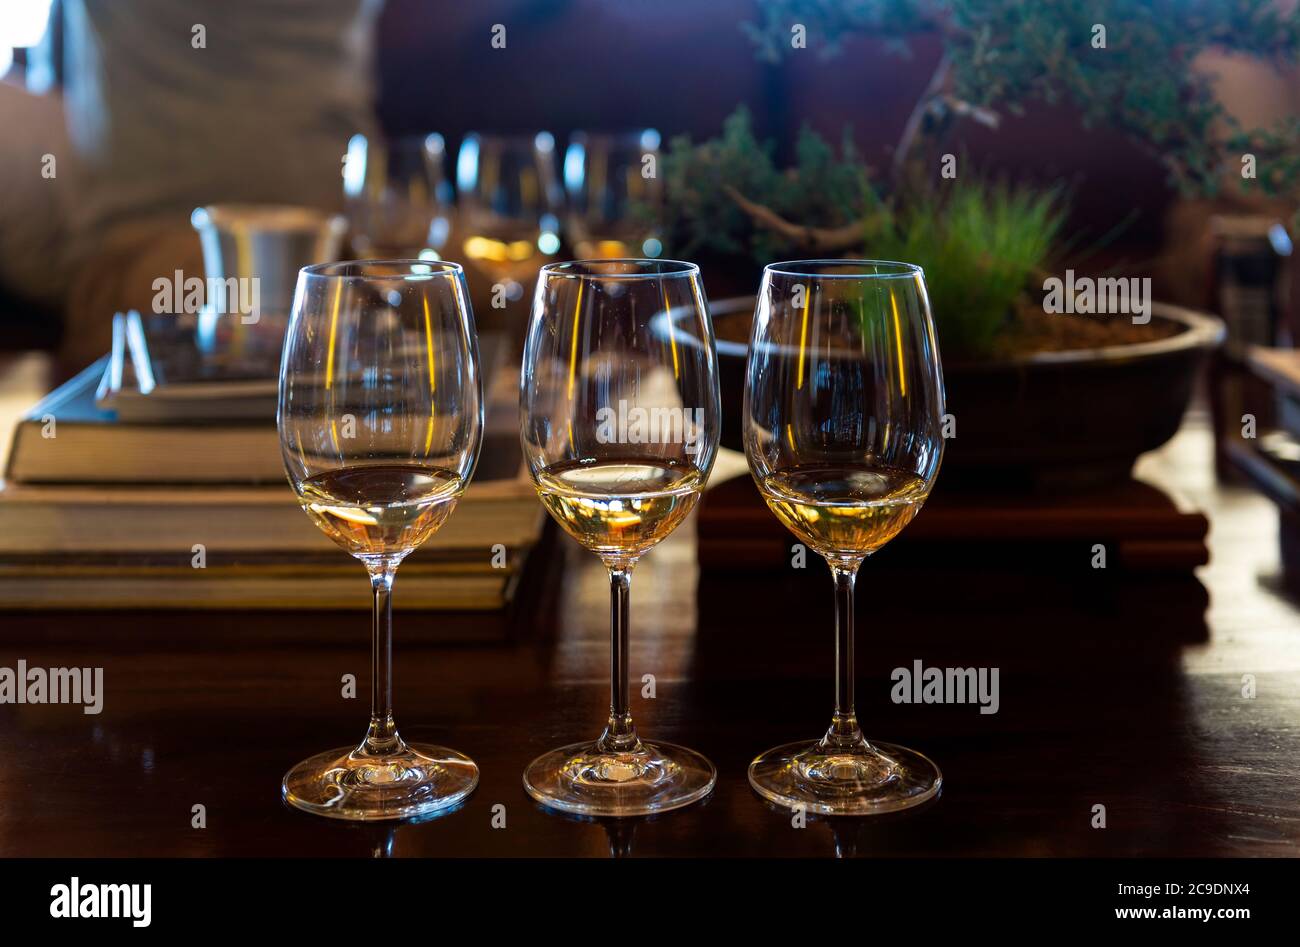 Drei Gläser Weißwein (Sauvignon Blanc und Chardonnay) für eine Weinprobe, Südafrika. Stockfoto